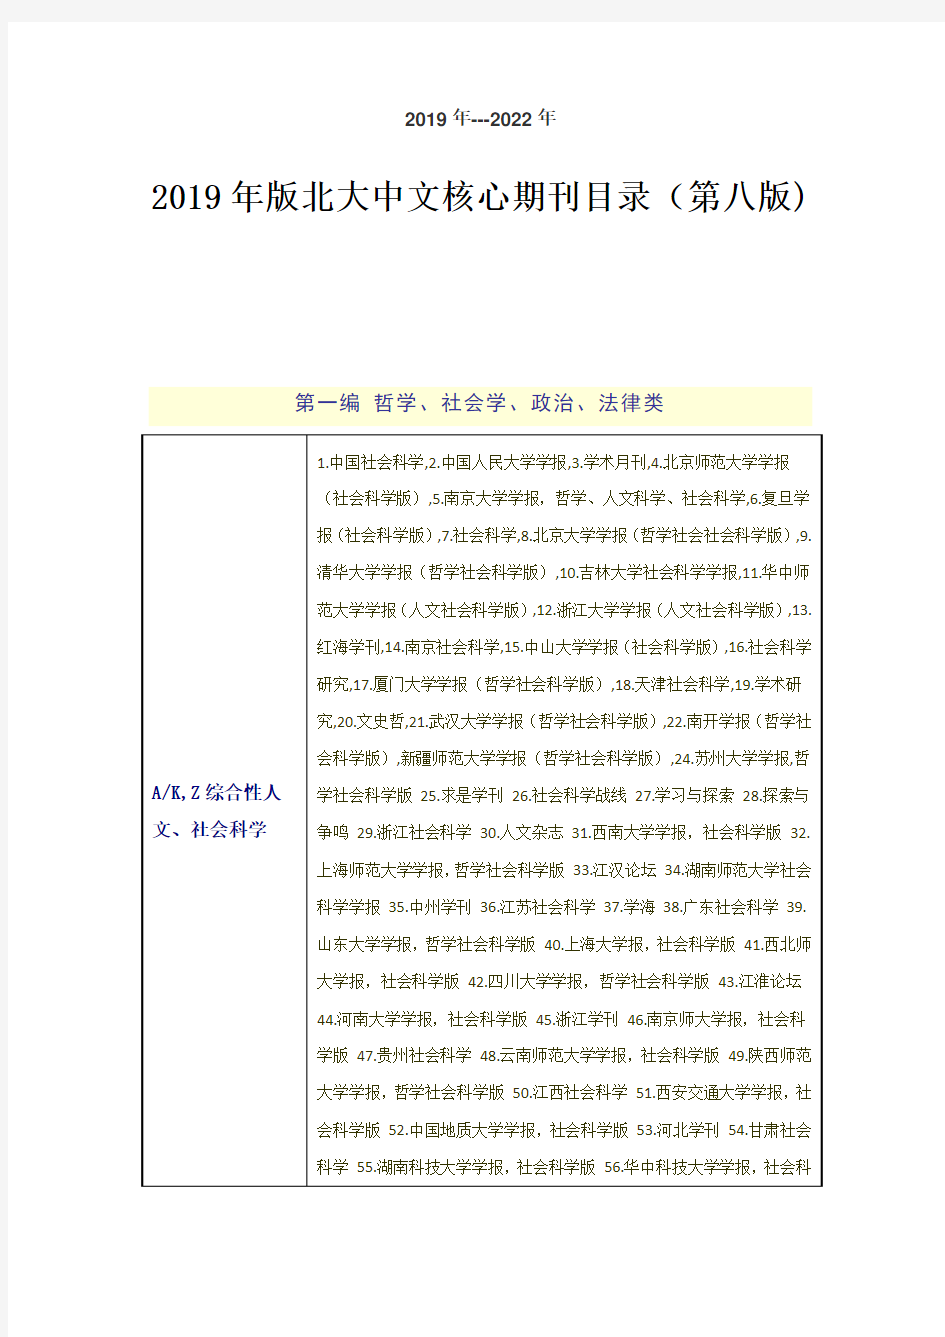 2019年最新北大中文核心期刊目录(最新第八版有效期至2022年)-